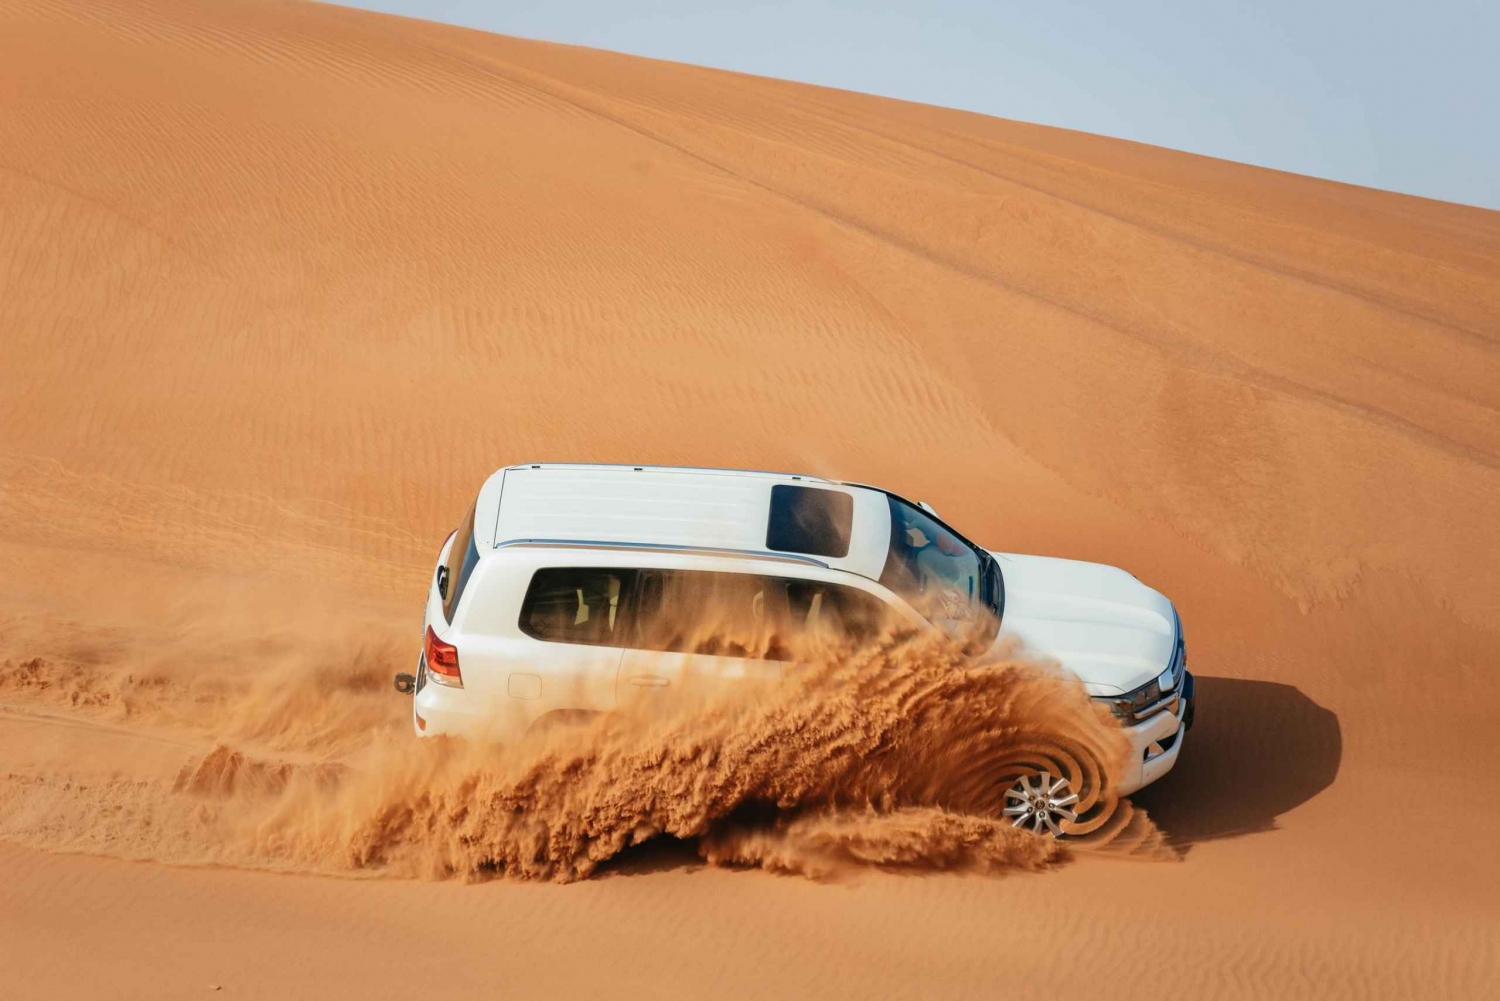 Dubaï : Safari extrême dans le désert, balade à dos de chameau, spectacle et dîner barbecue